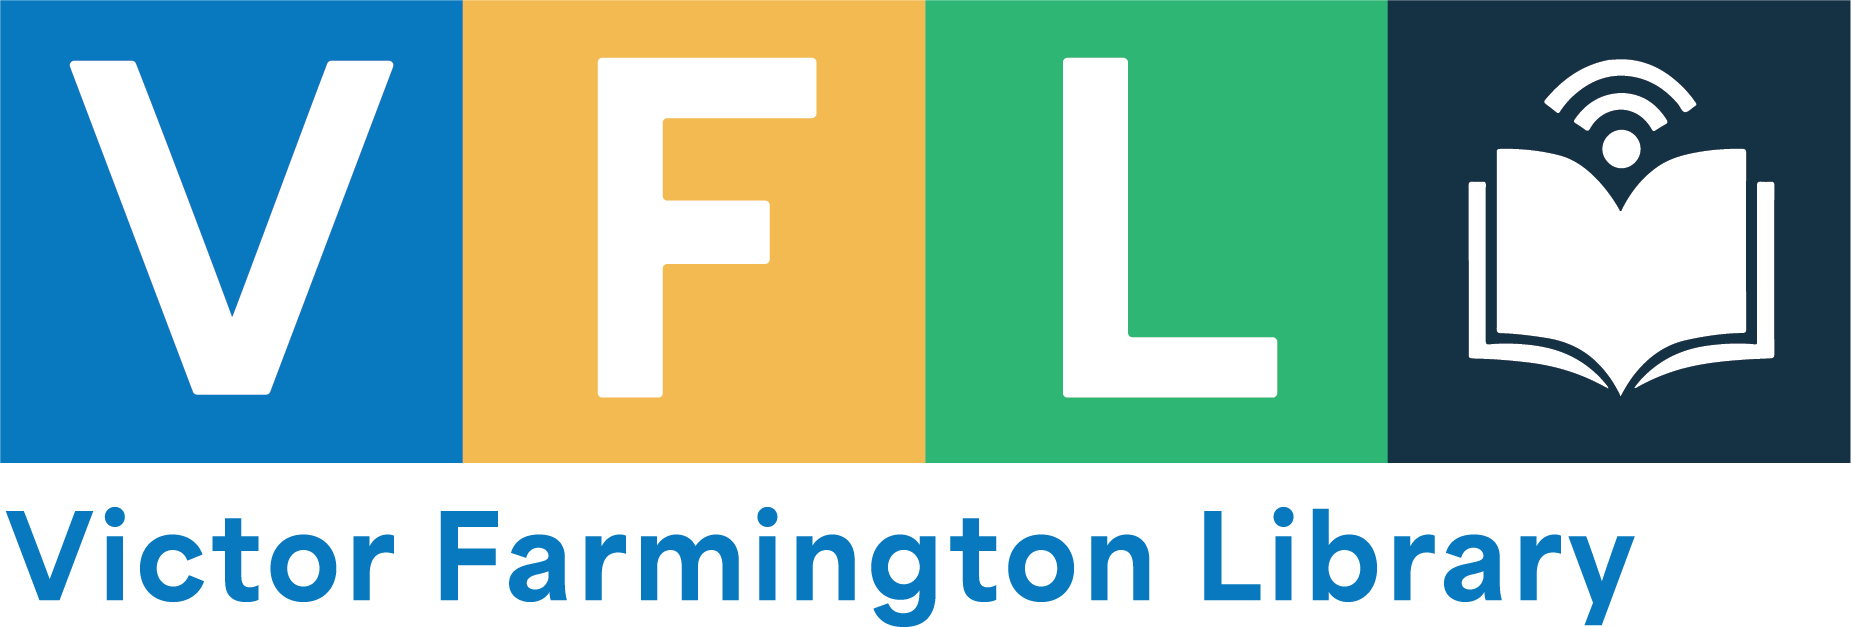 Victor Farmington Library logo